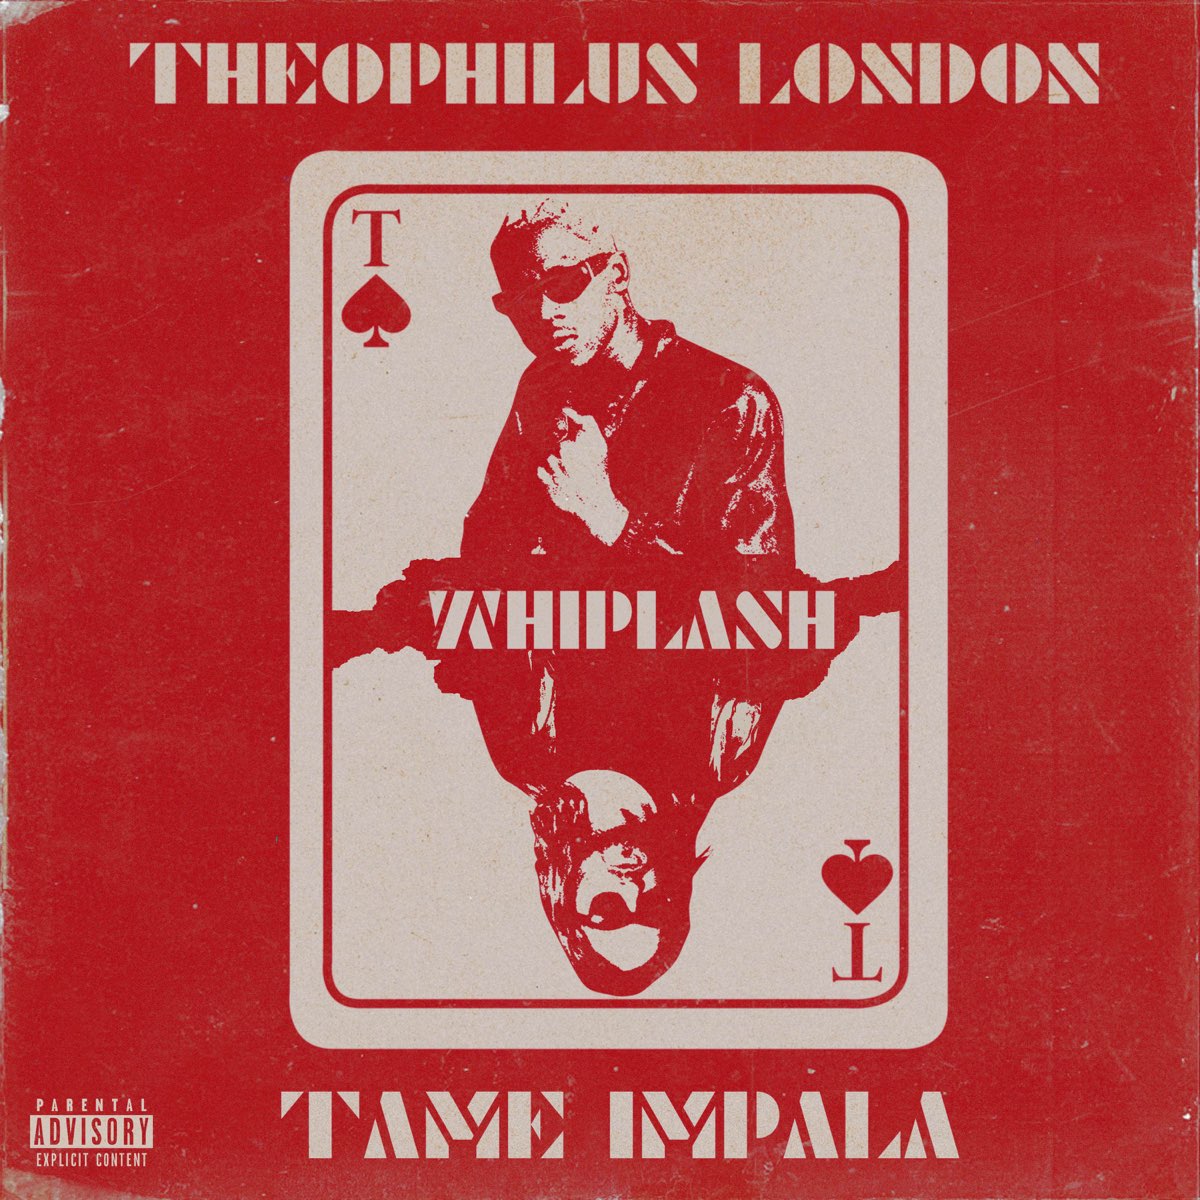 Theophilus London – Whiplash Ft. Tame Impala